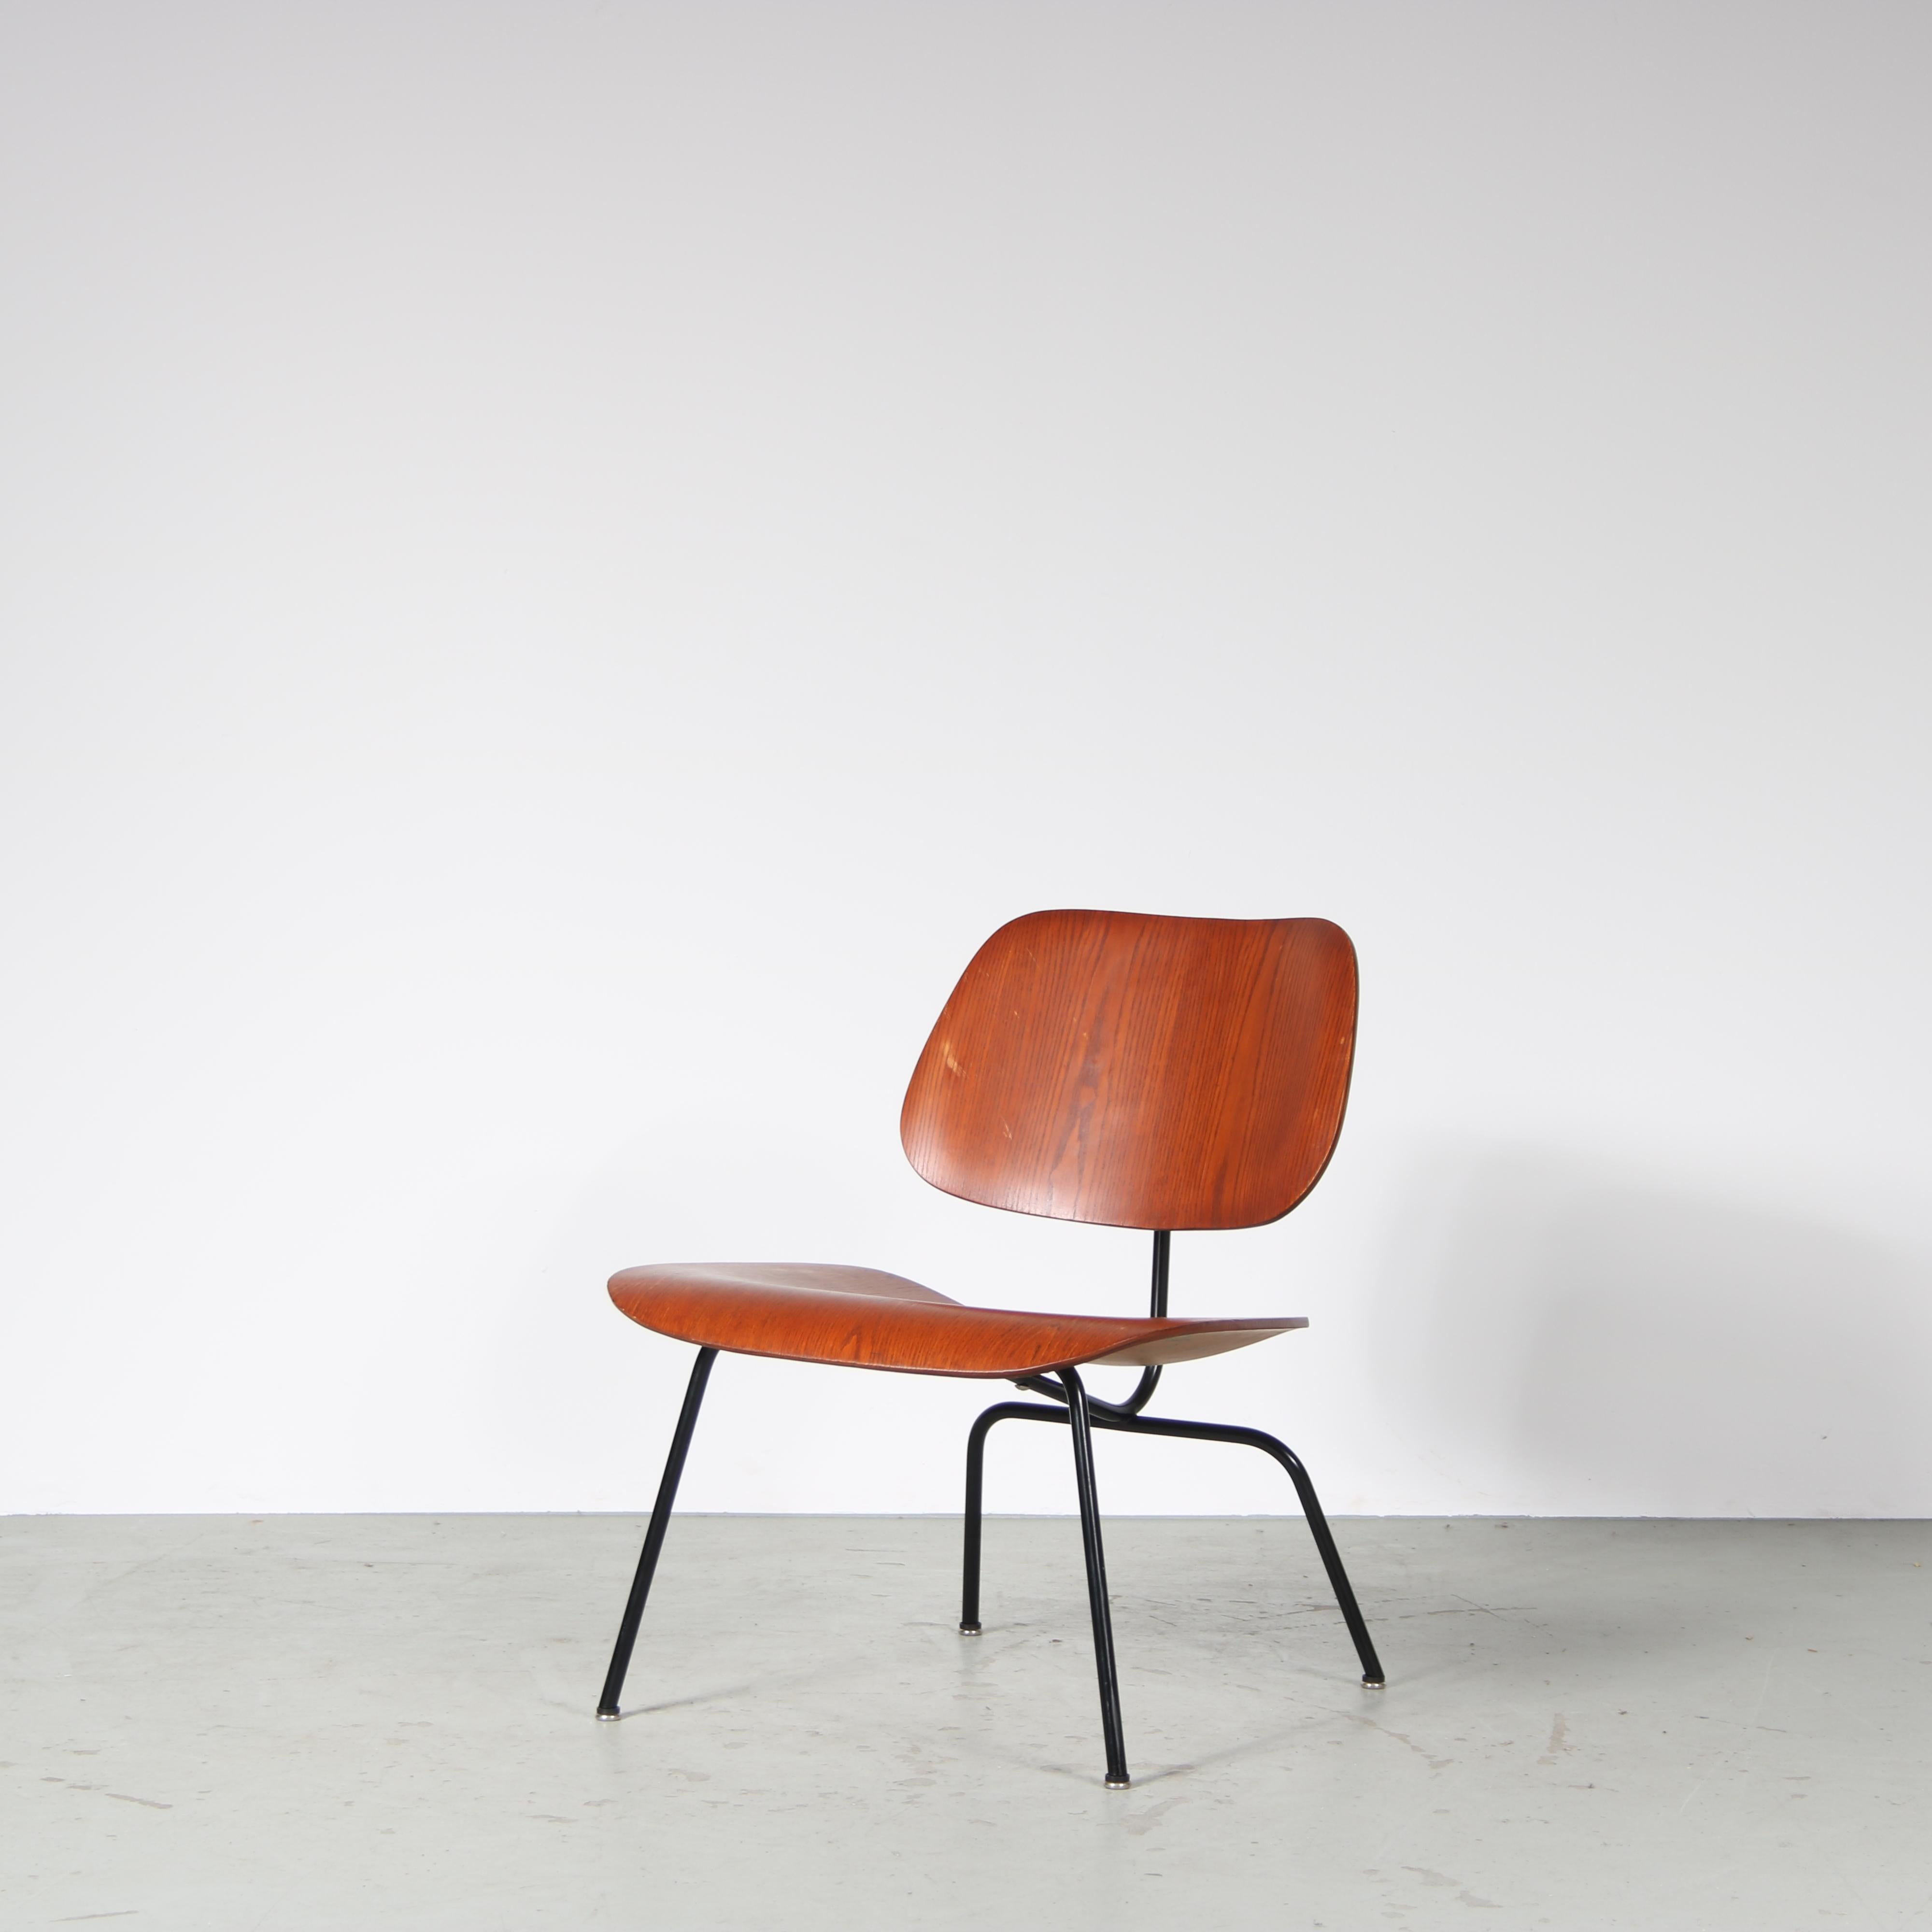 Un fauteuil emblématique, le modèle LCM, conçu par Charles & Ray Eames et fabriqué par Evans aux États-Unis vers 1960.

LCM signifie 